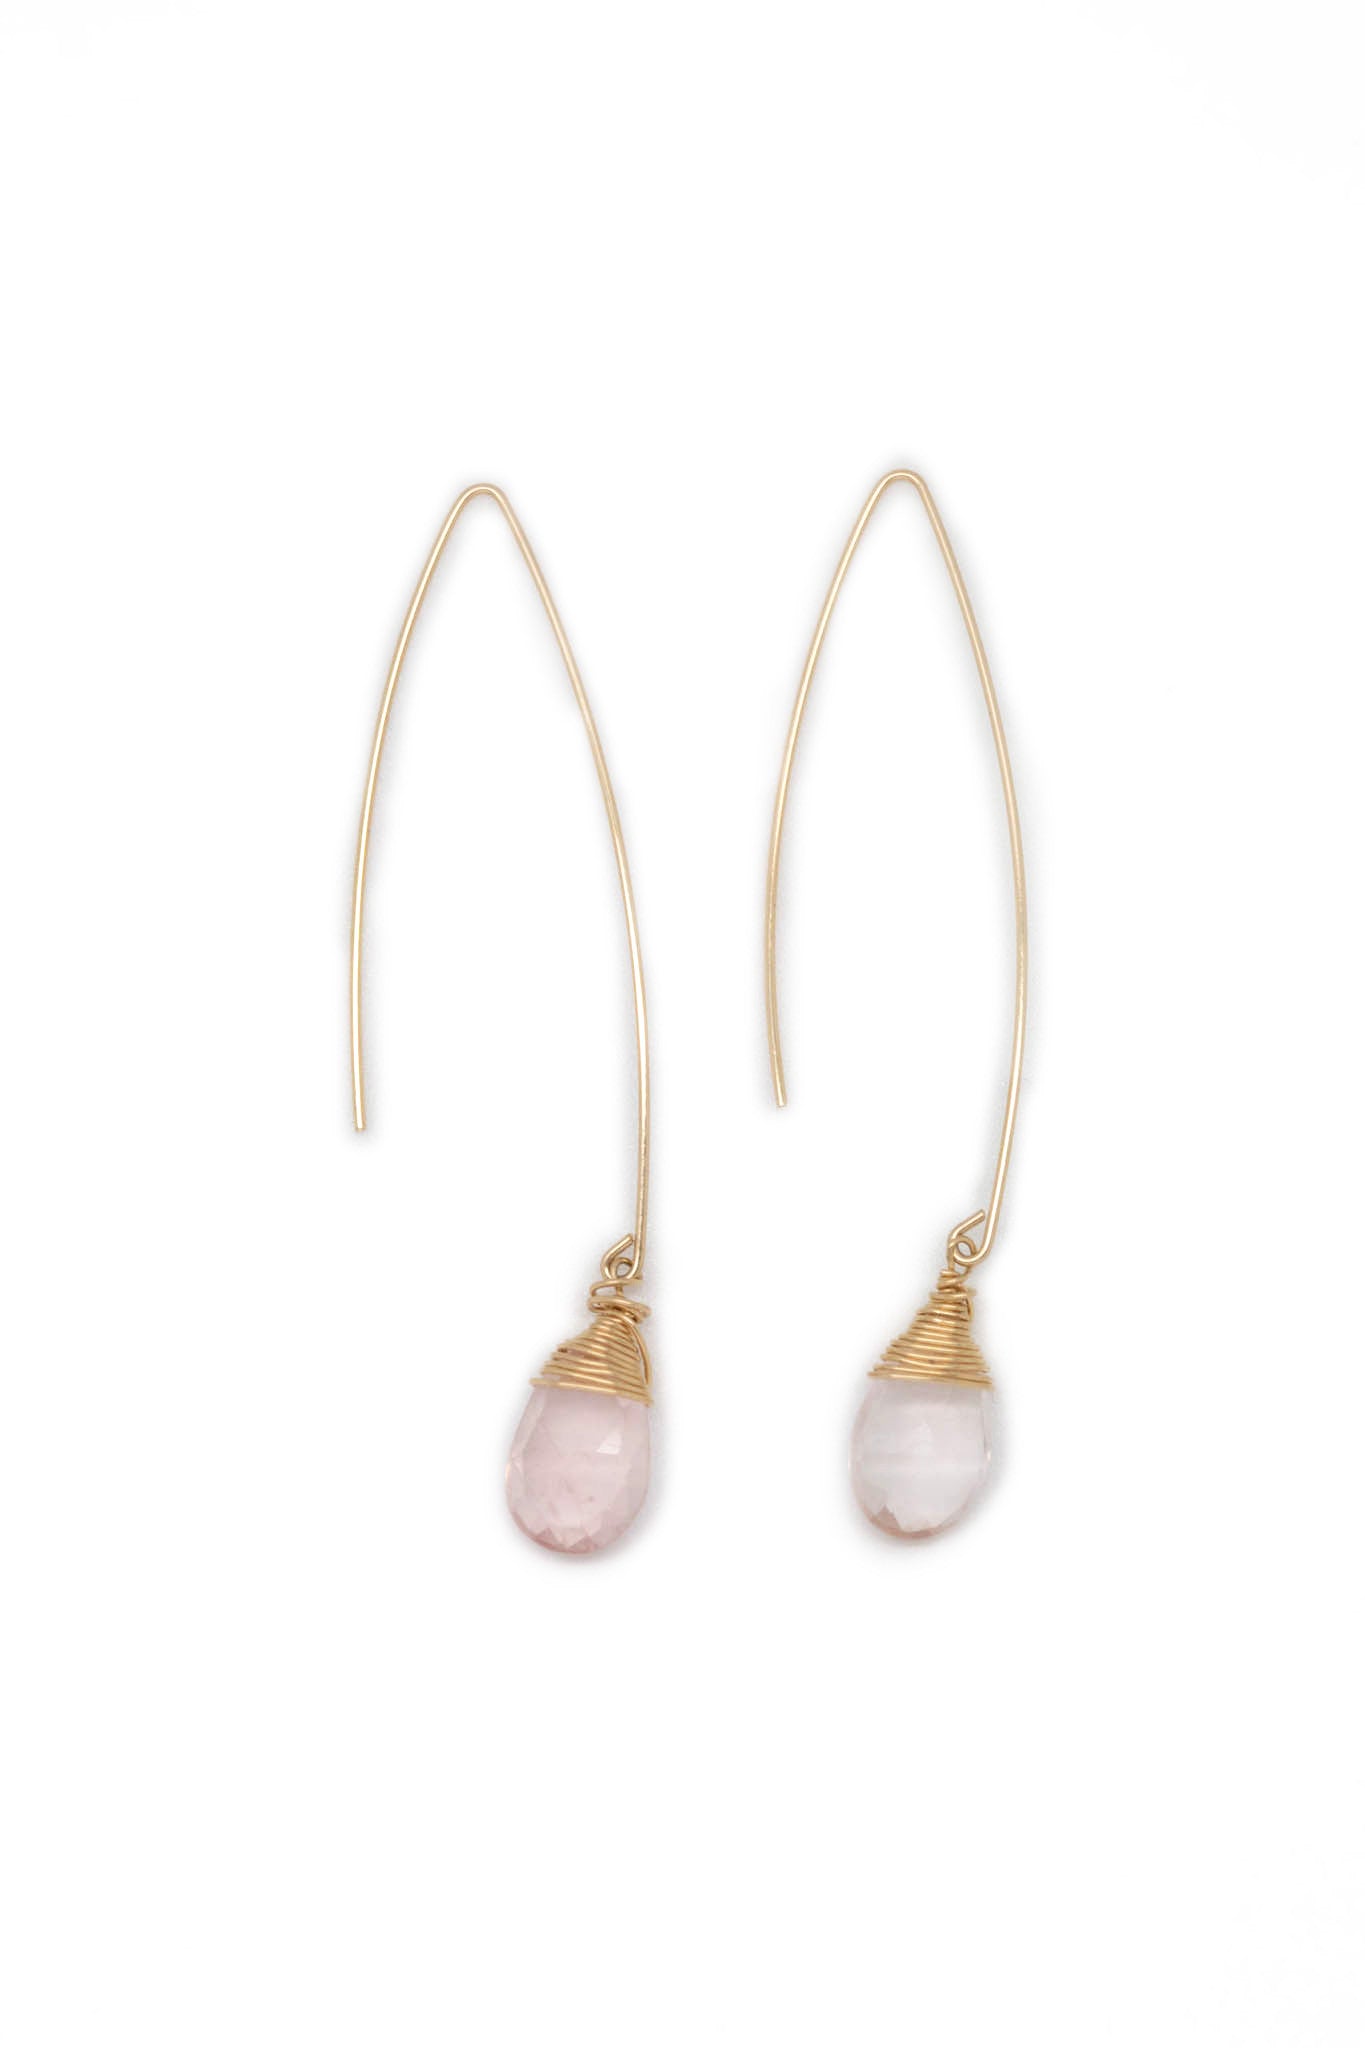 Jill Long Wire Drop Earrings in Rose Quartz